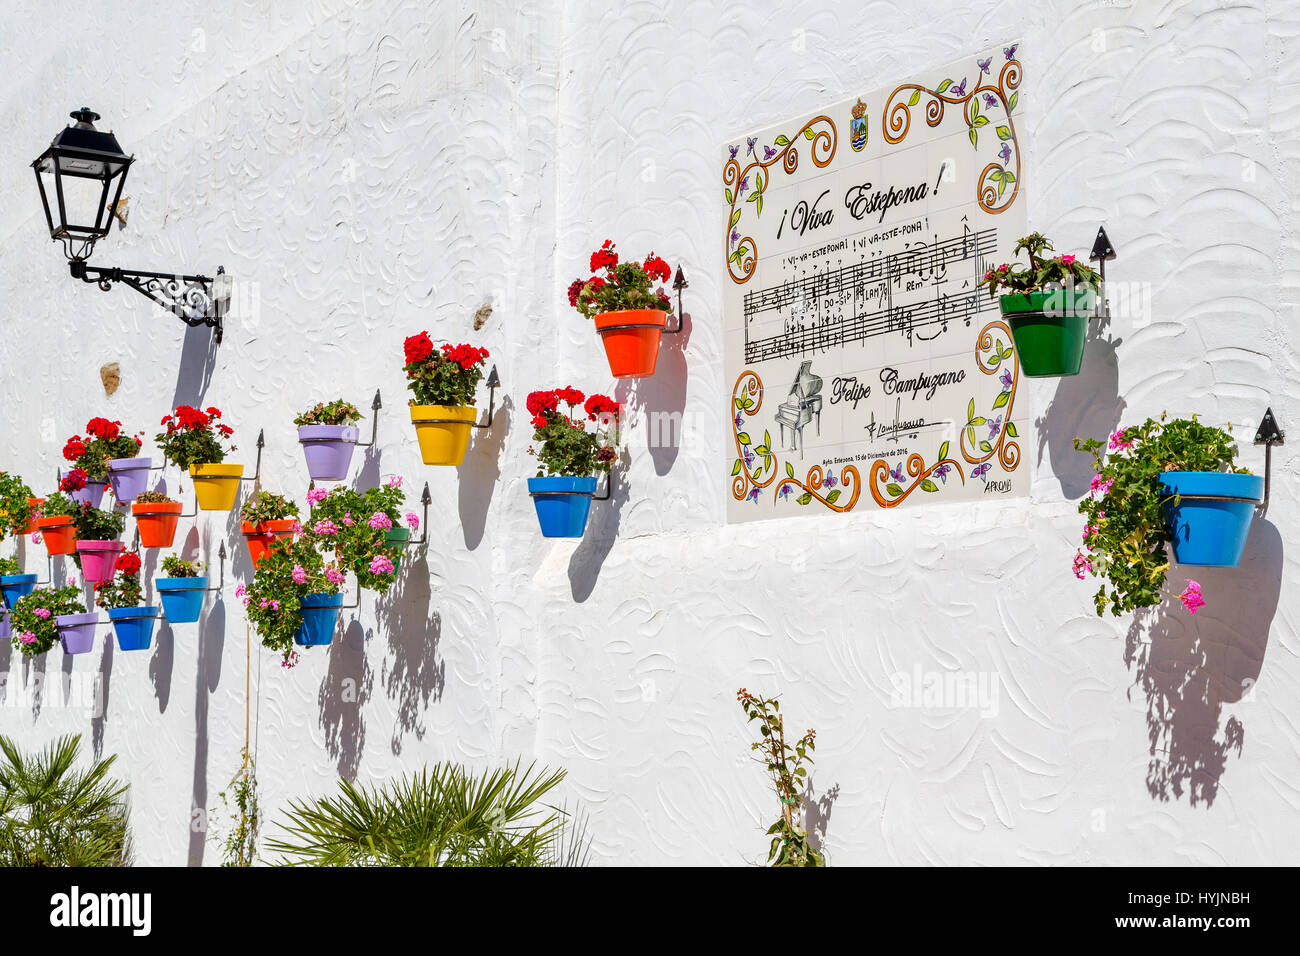 Vaso di fiori e parete bianca, Estepona. Malaga provincia Costa del Sol. Andalusia Spagna meridionale, Europa Foto Stock